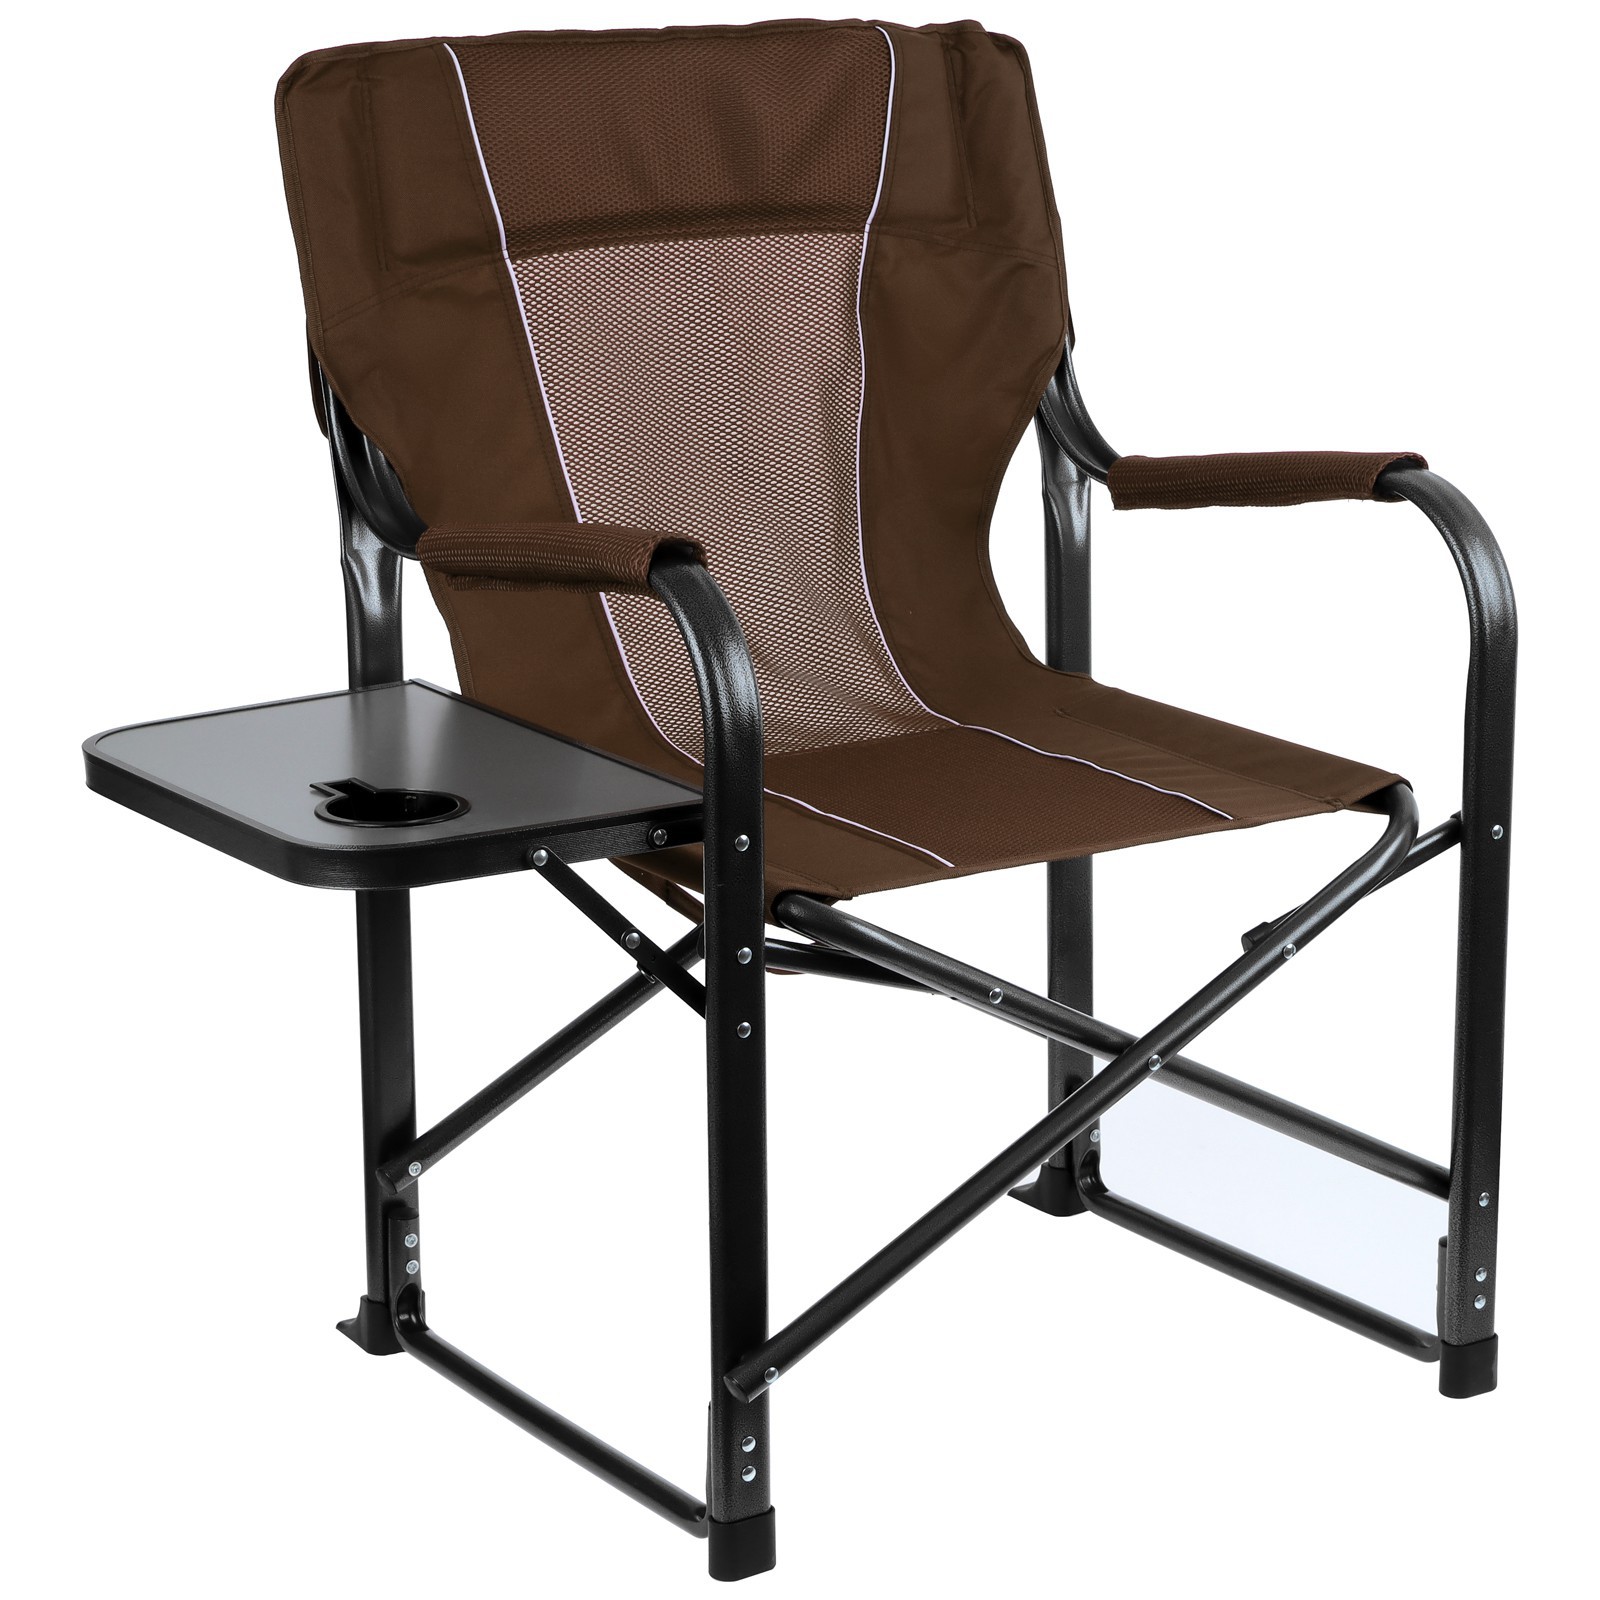 Кресло Maclay туристическое стол с подстаканником р. 63 х 47 х 94 см цвет коричневый - фото 4